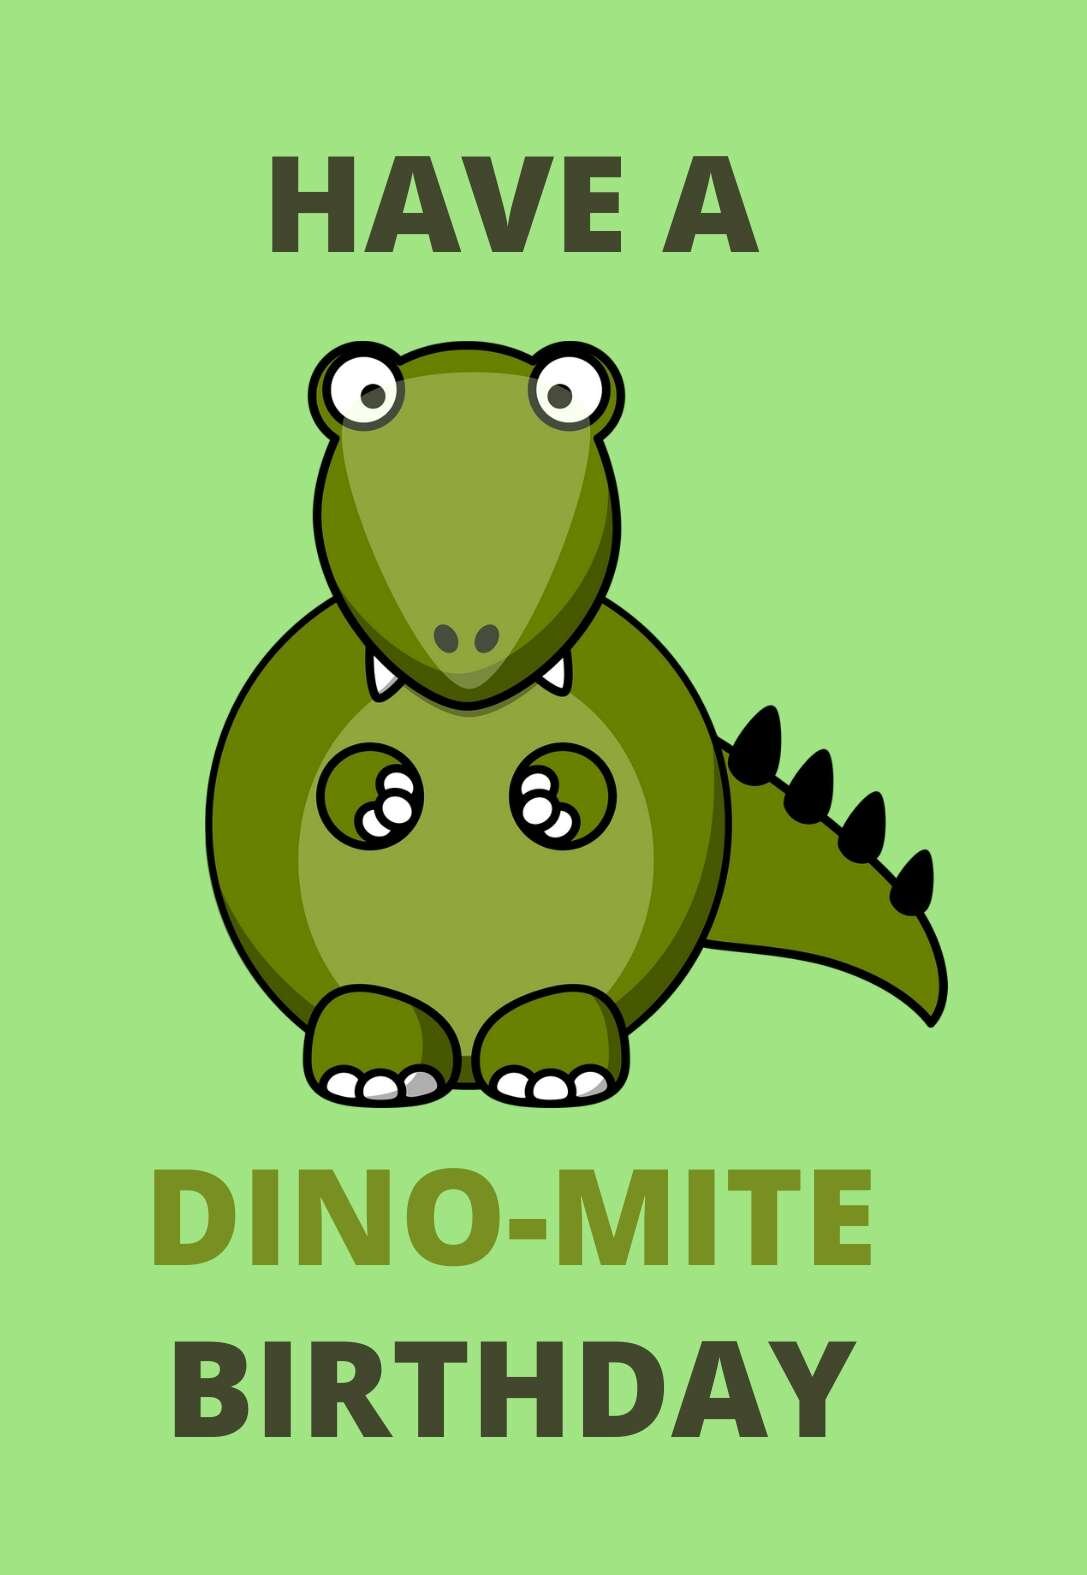 Free Dinosaur Printable Birthday Card